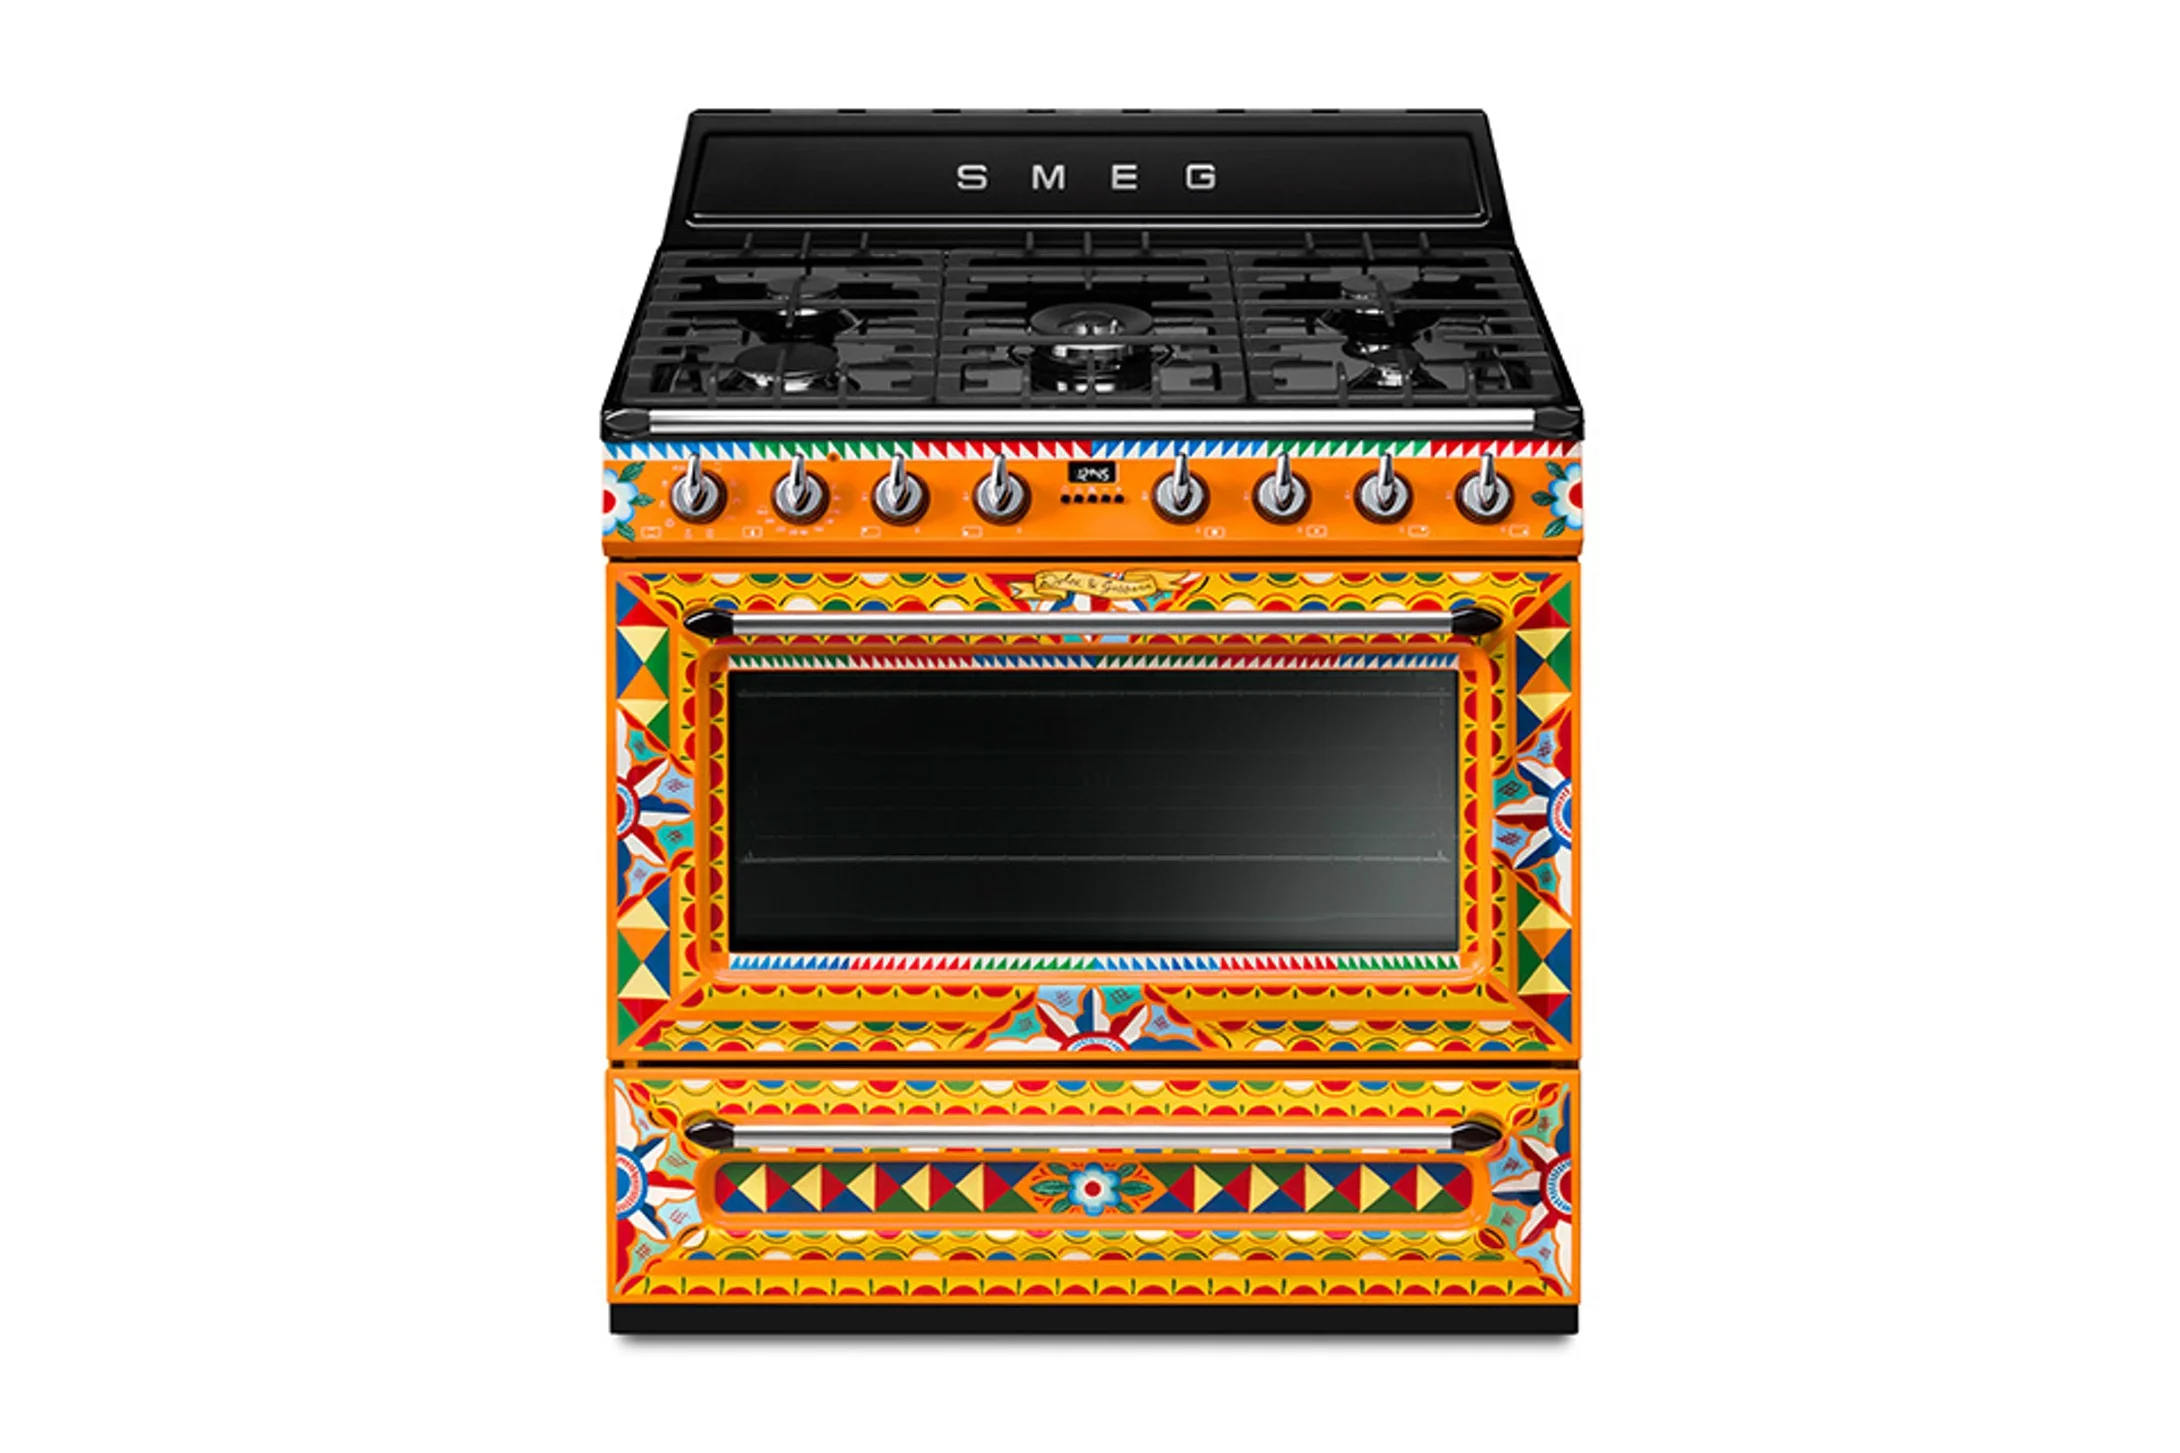 Dolce & Gabbana выпустили технику для кухни - вот, как выглядит эта дизайнерская роскошь - фото 380579